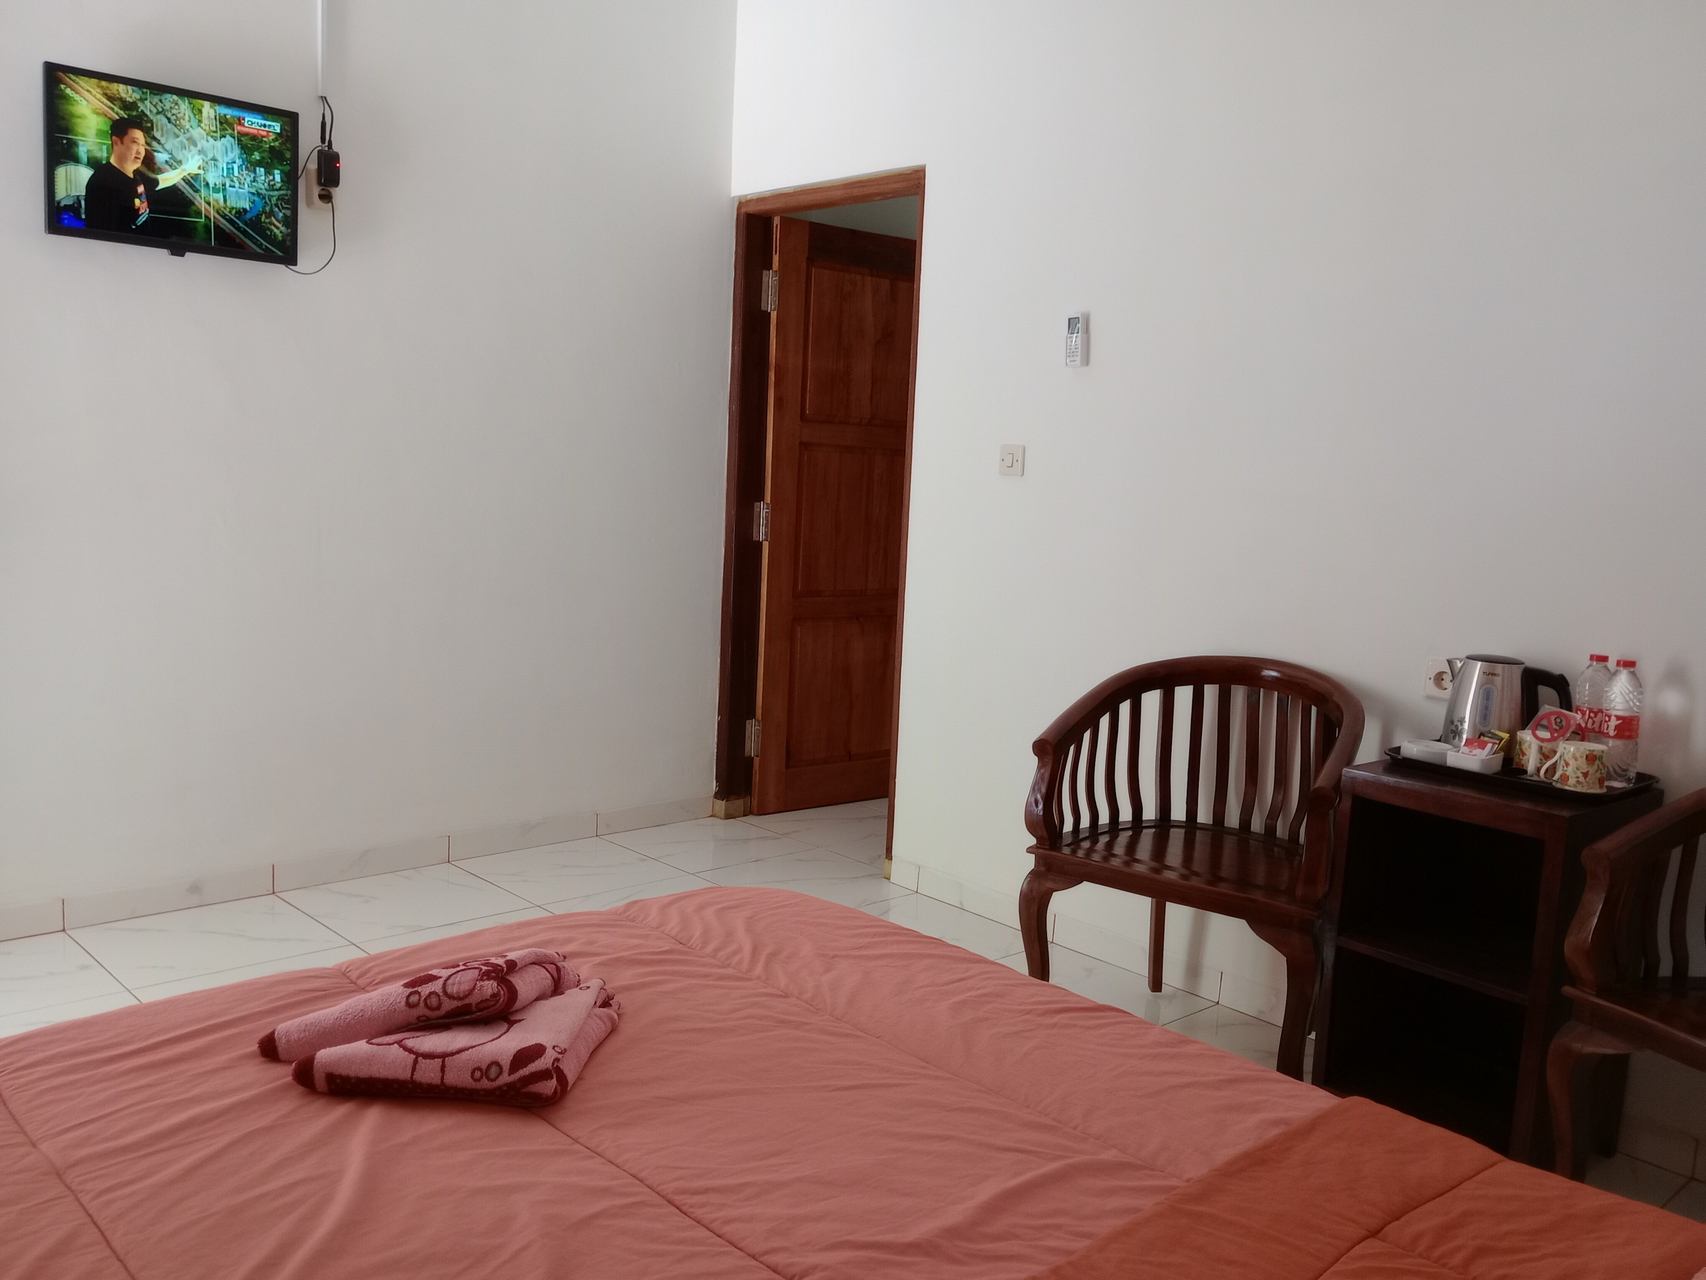 Bedroom 3, Griyo Dan Syariah, Magelang